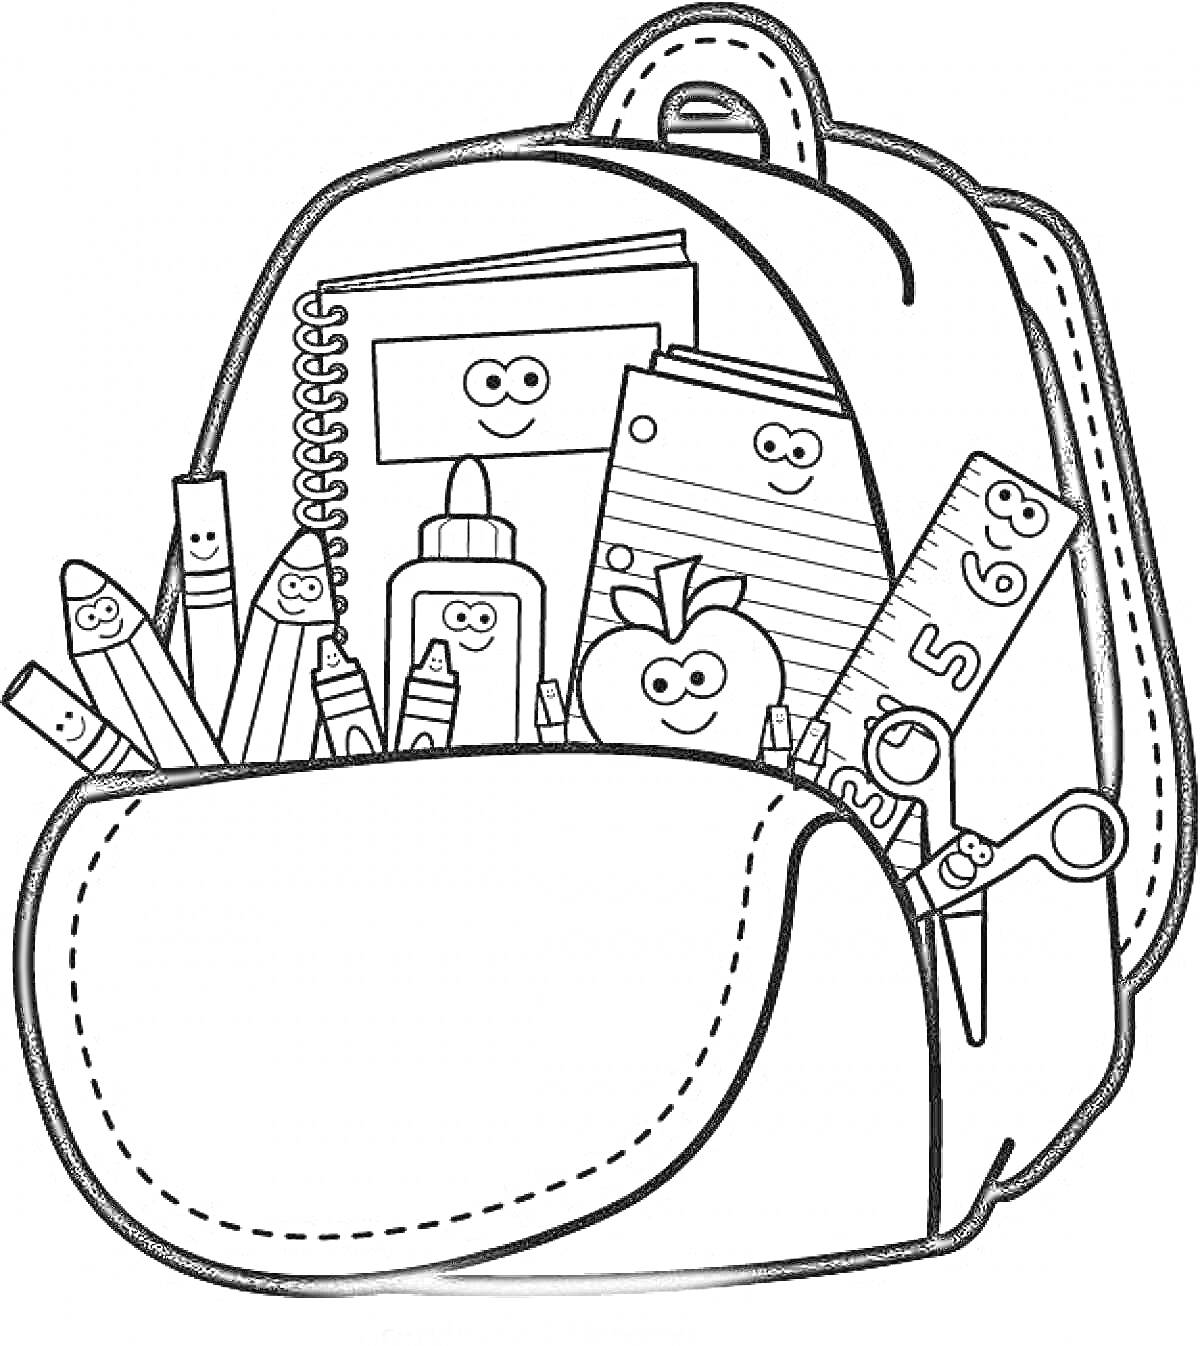 Раскраска Рюкзак с тетрадями, карандашами, клеем, яблоком, линейкой и ручками